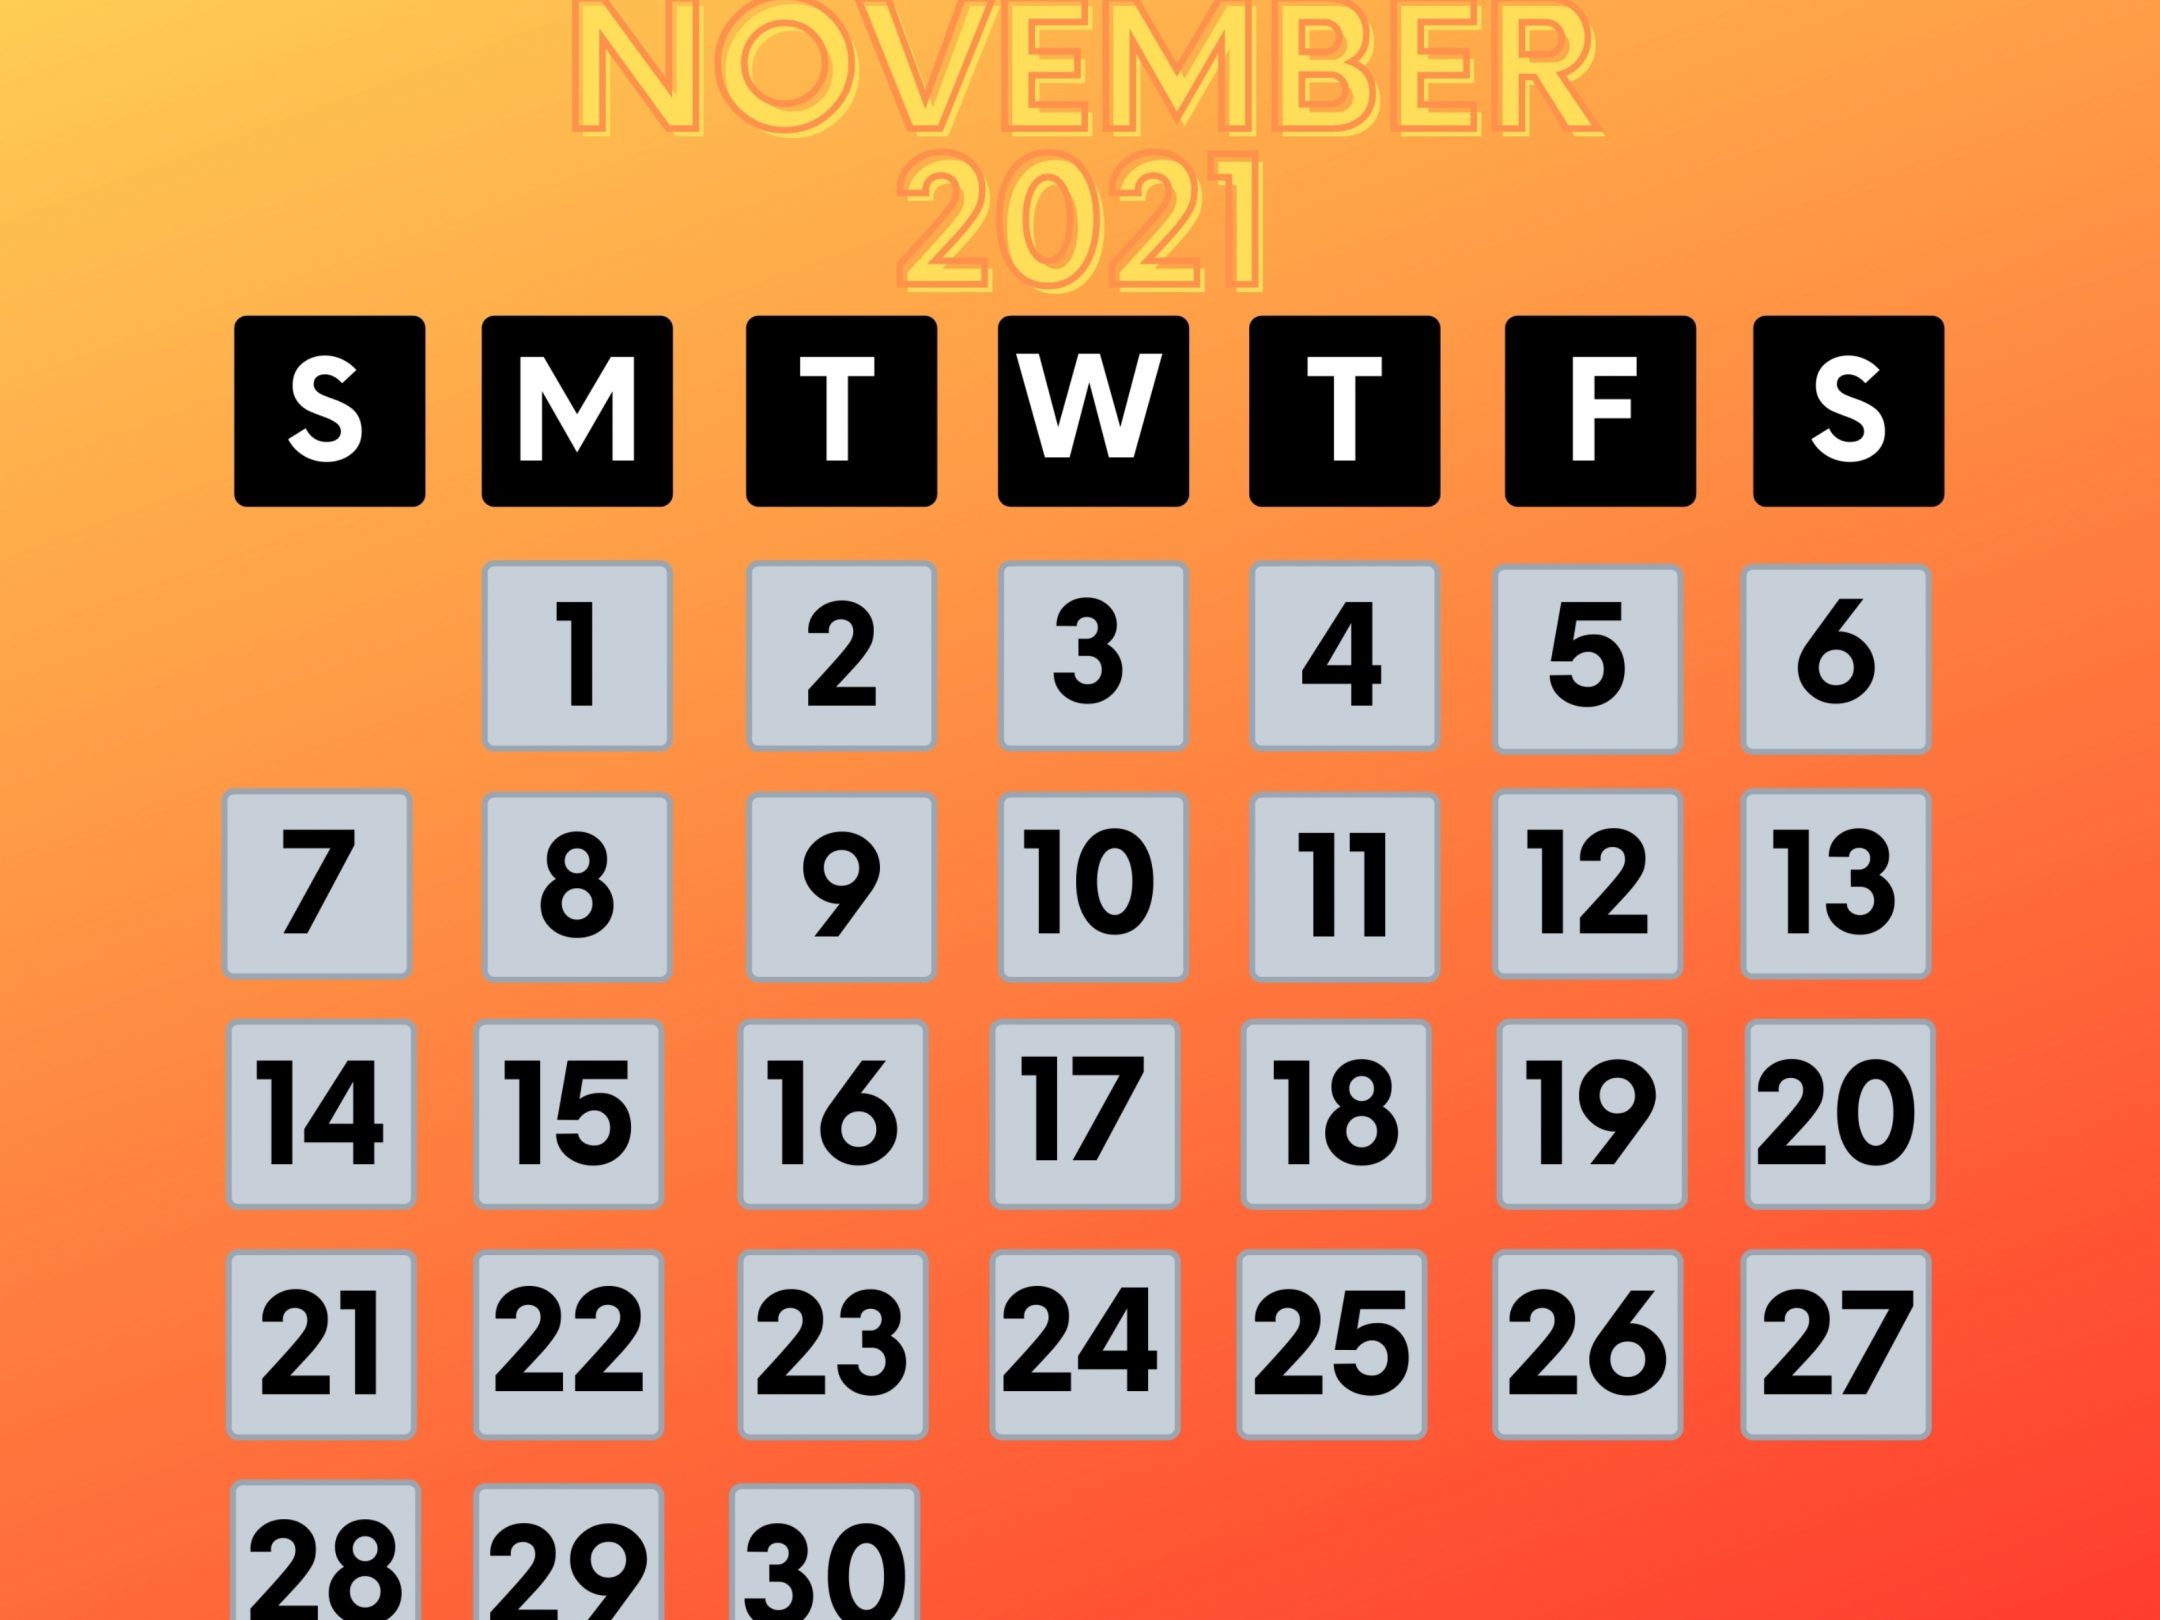 2160x1620 iPad wallpaper 4k November 2021 Calendar iPad Wallpaper 2160x1620 pixels resolution